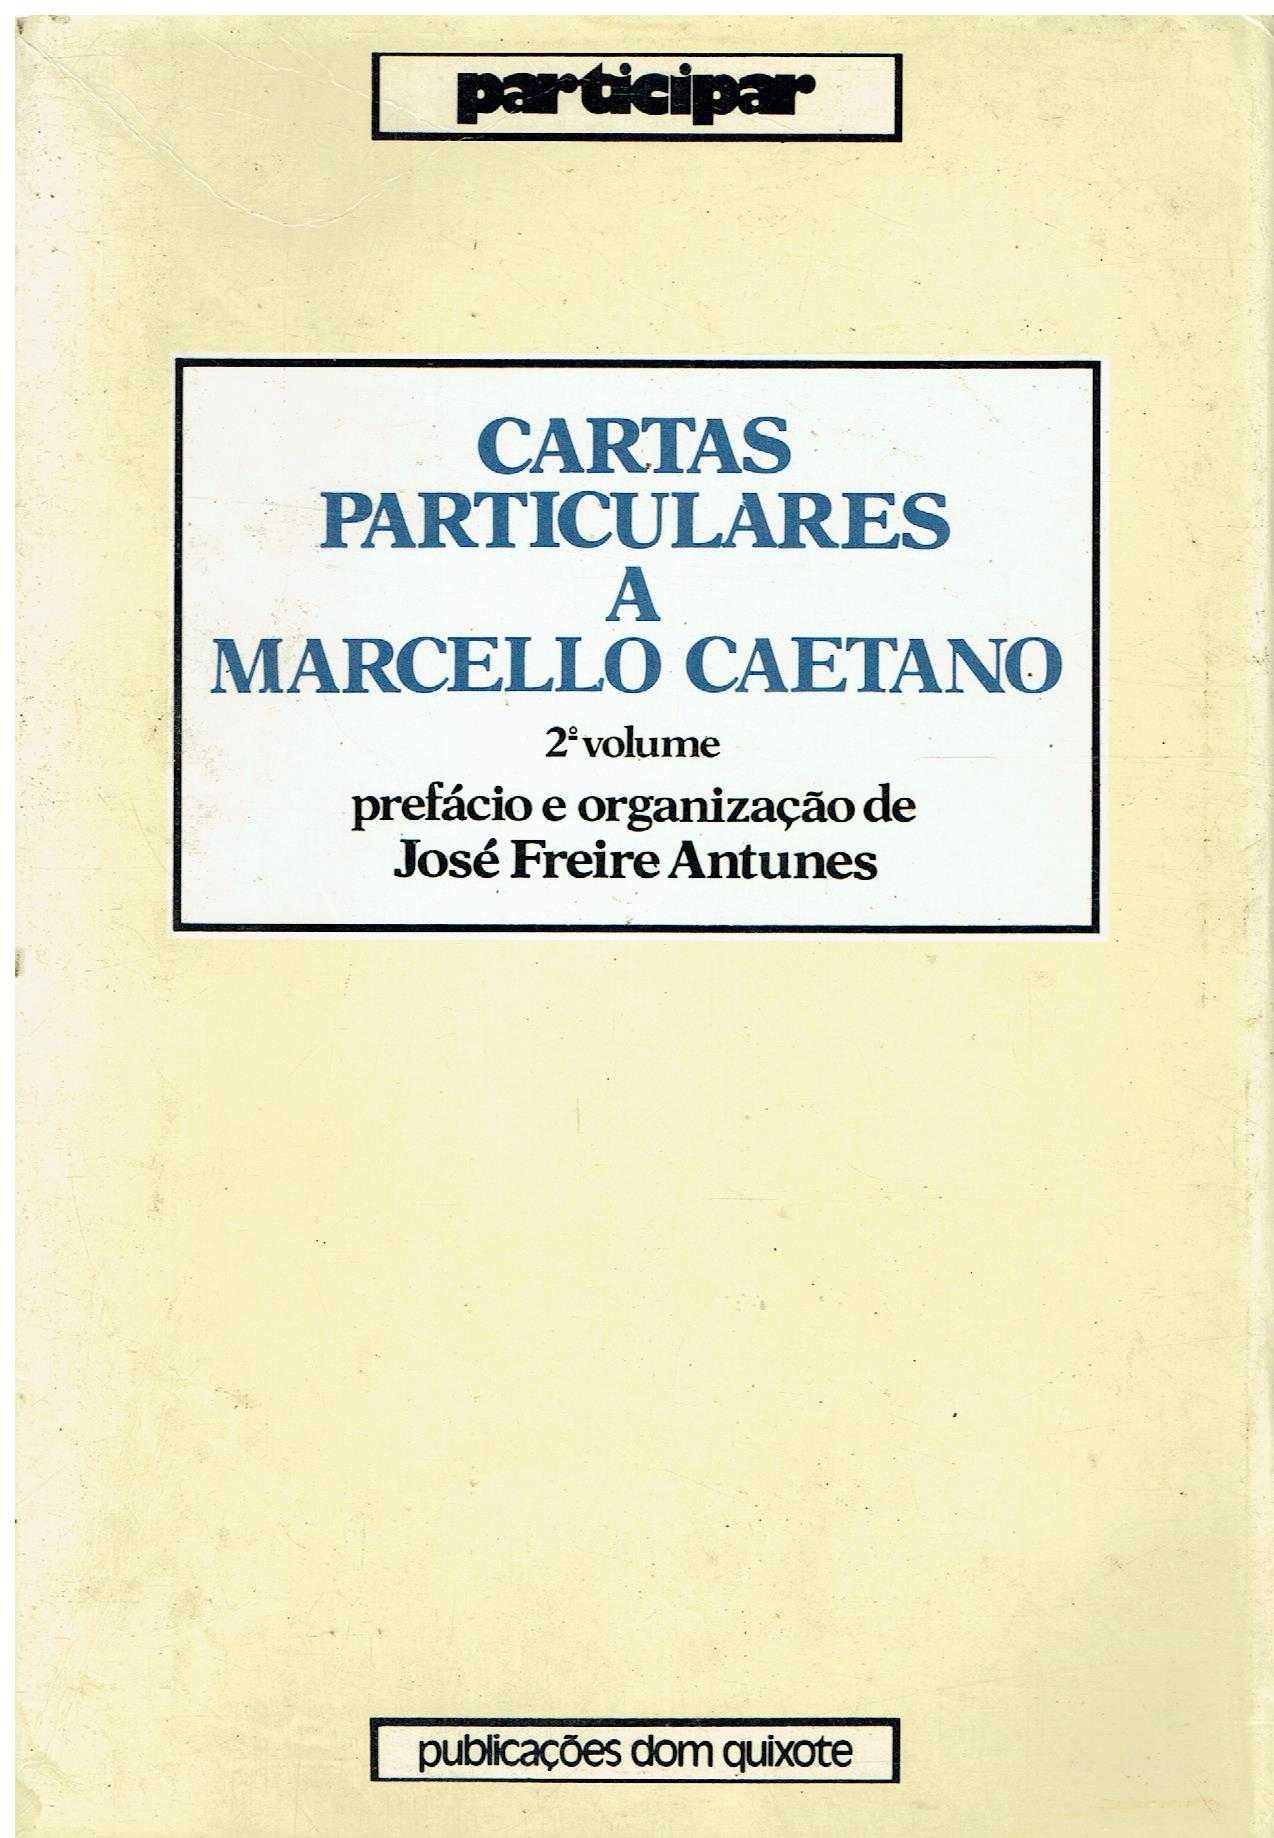 3540 - Livros de Marcello Caetano 2 (Vários)